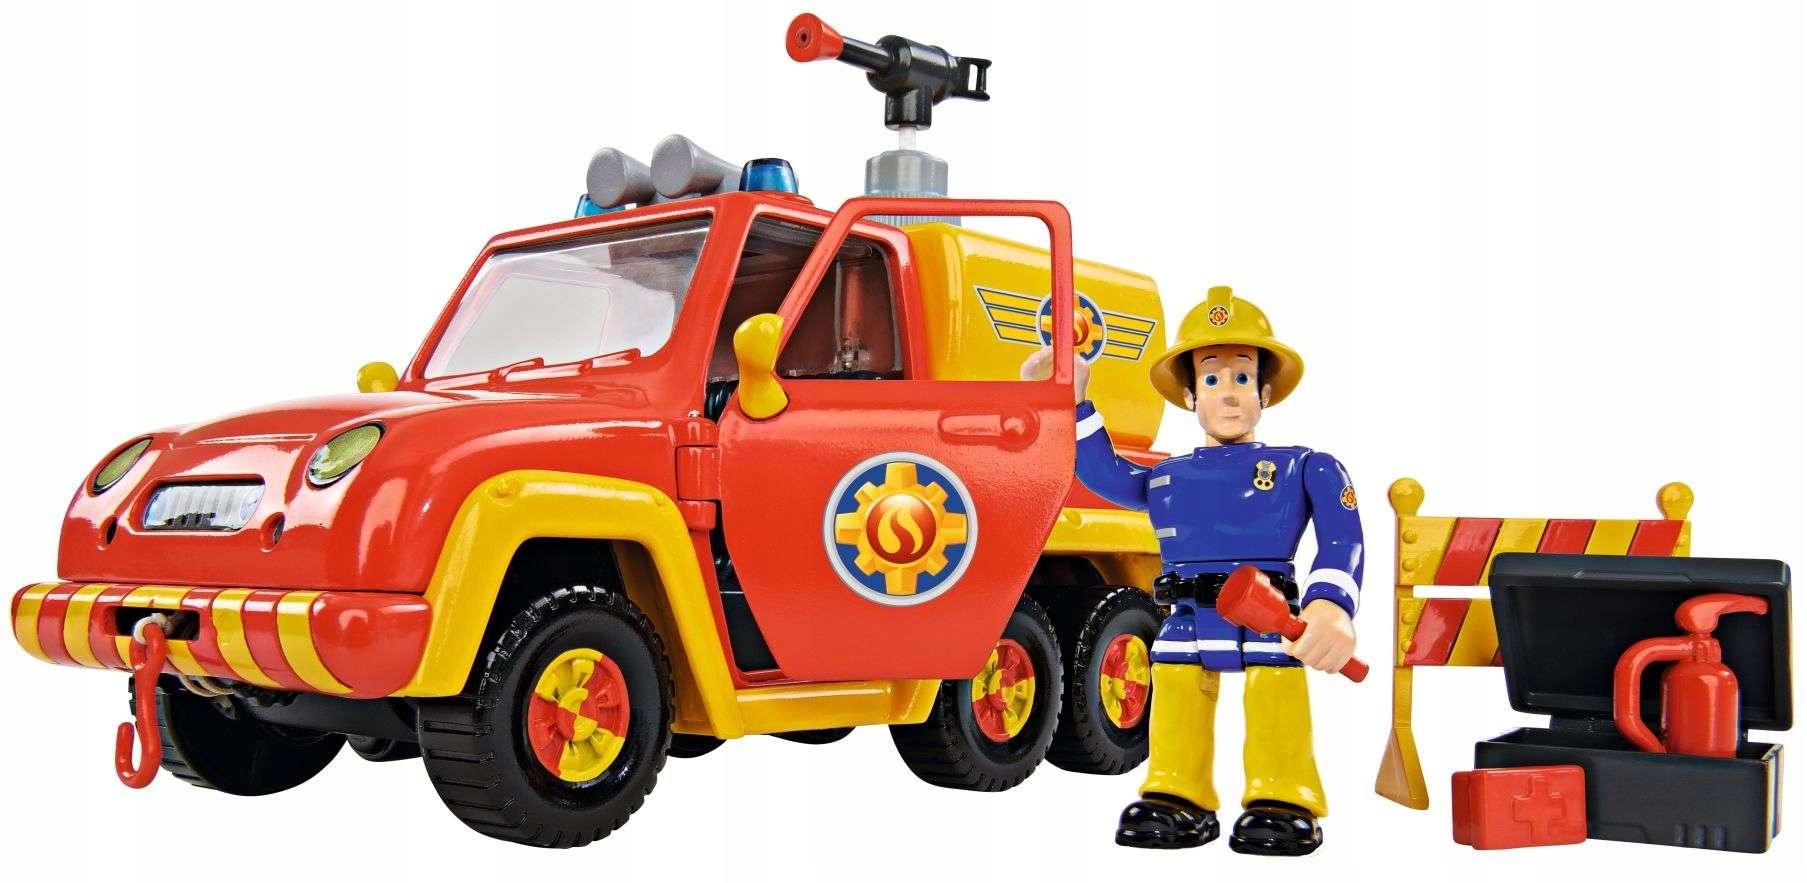 Маленькая пожарная машинка. Игровой набор Simba Fireman Sam машинка 9251054. Машинка Dickie Toys пожарный Сэм (3093000) 1:64. Игрушка пожарная машина с водой пожарный Сэм.